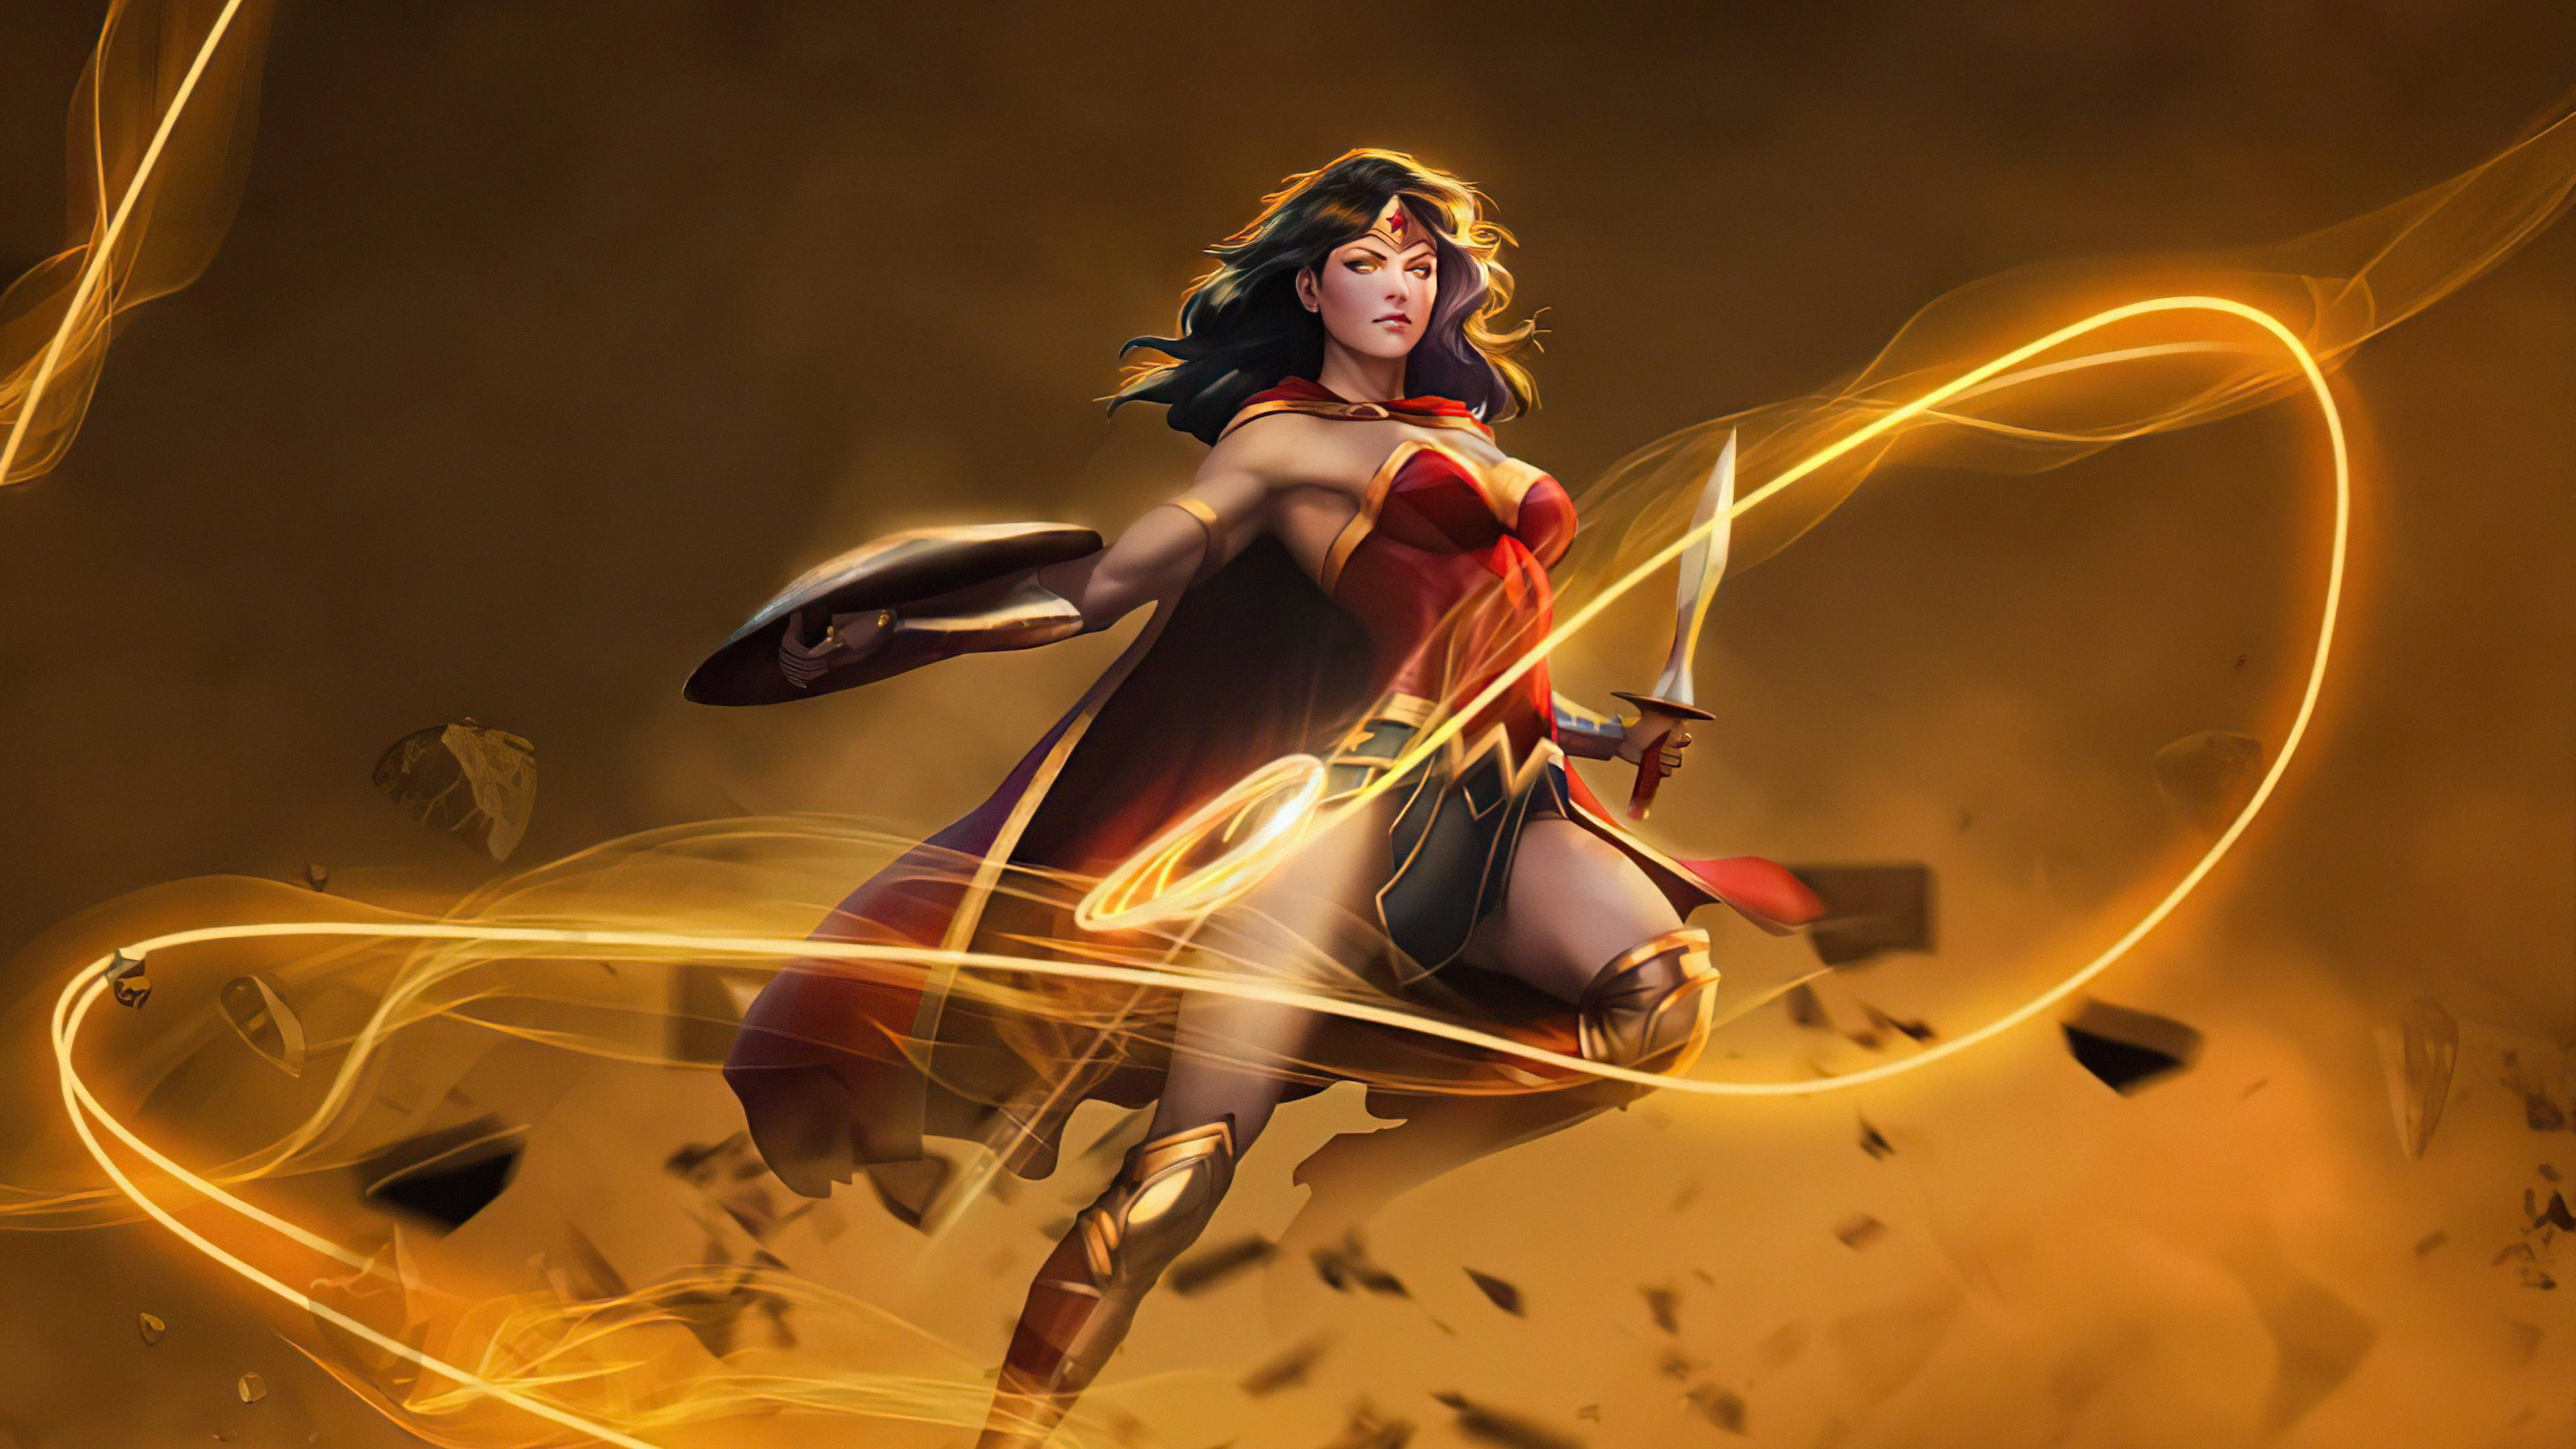 Wallpaper Wonder Woman Fanart 2020